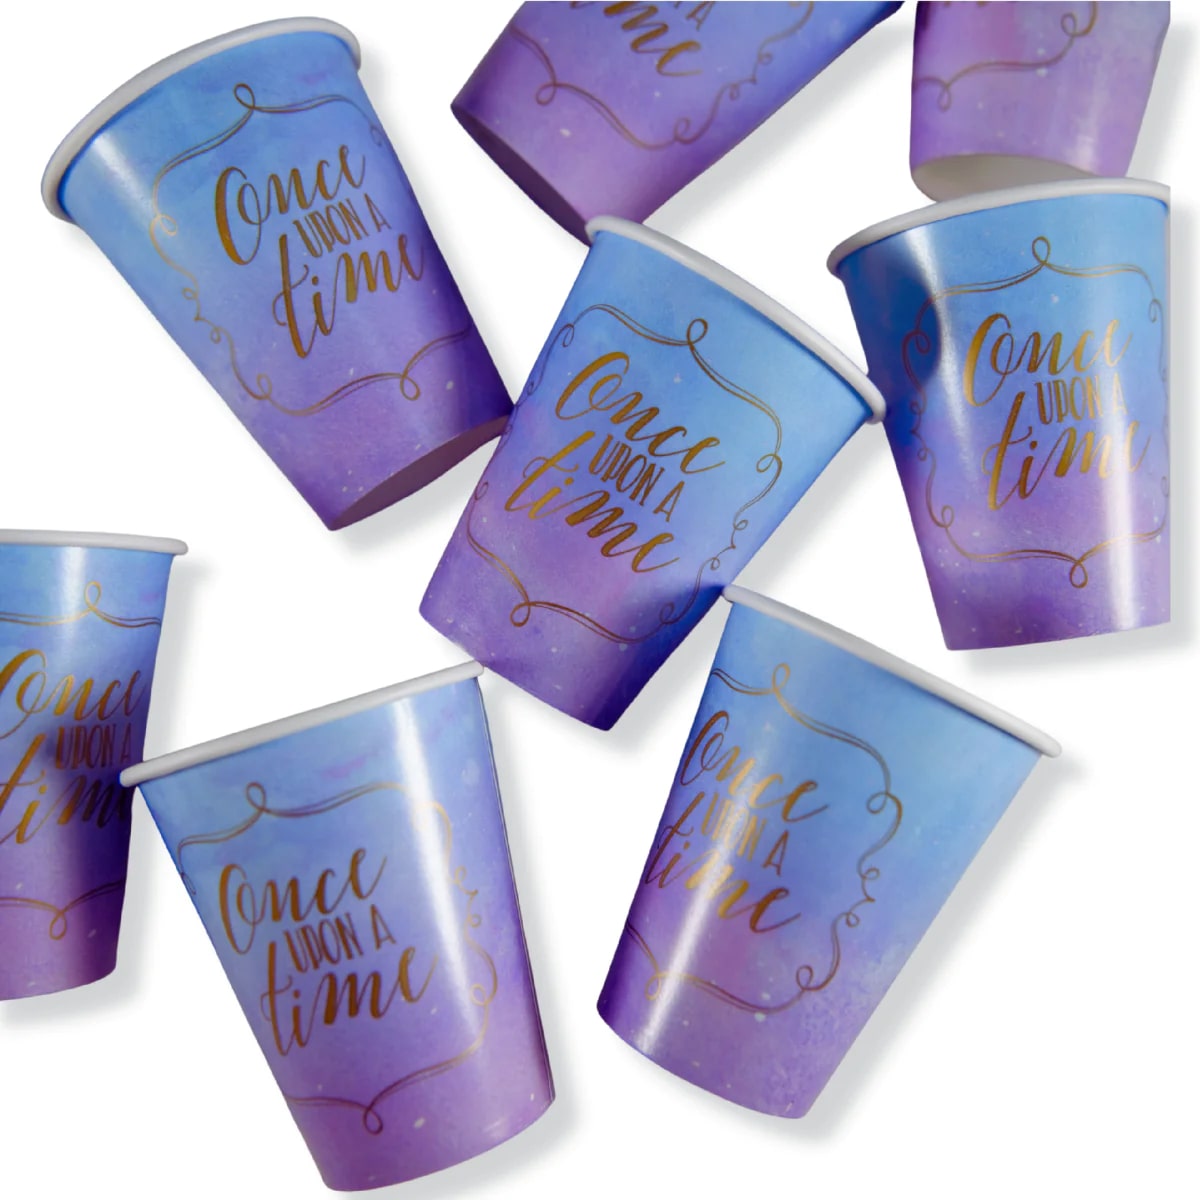 My Party Centre - Disney Princess Paper Cup, 9Oz, 8Pcs